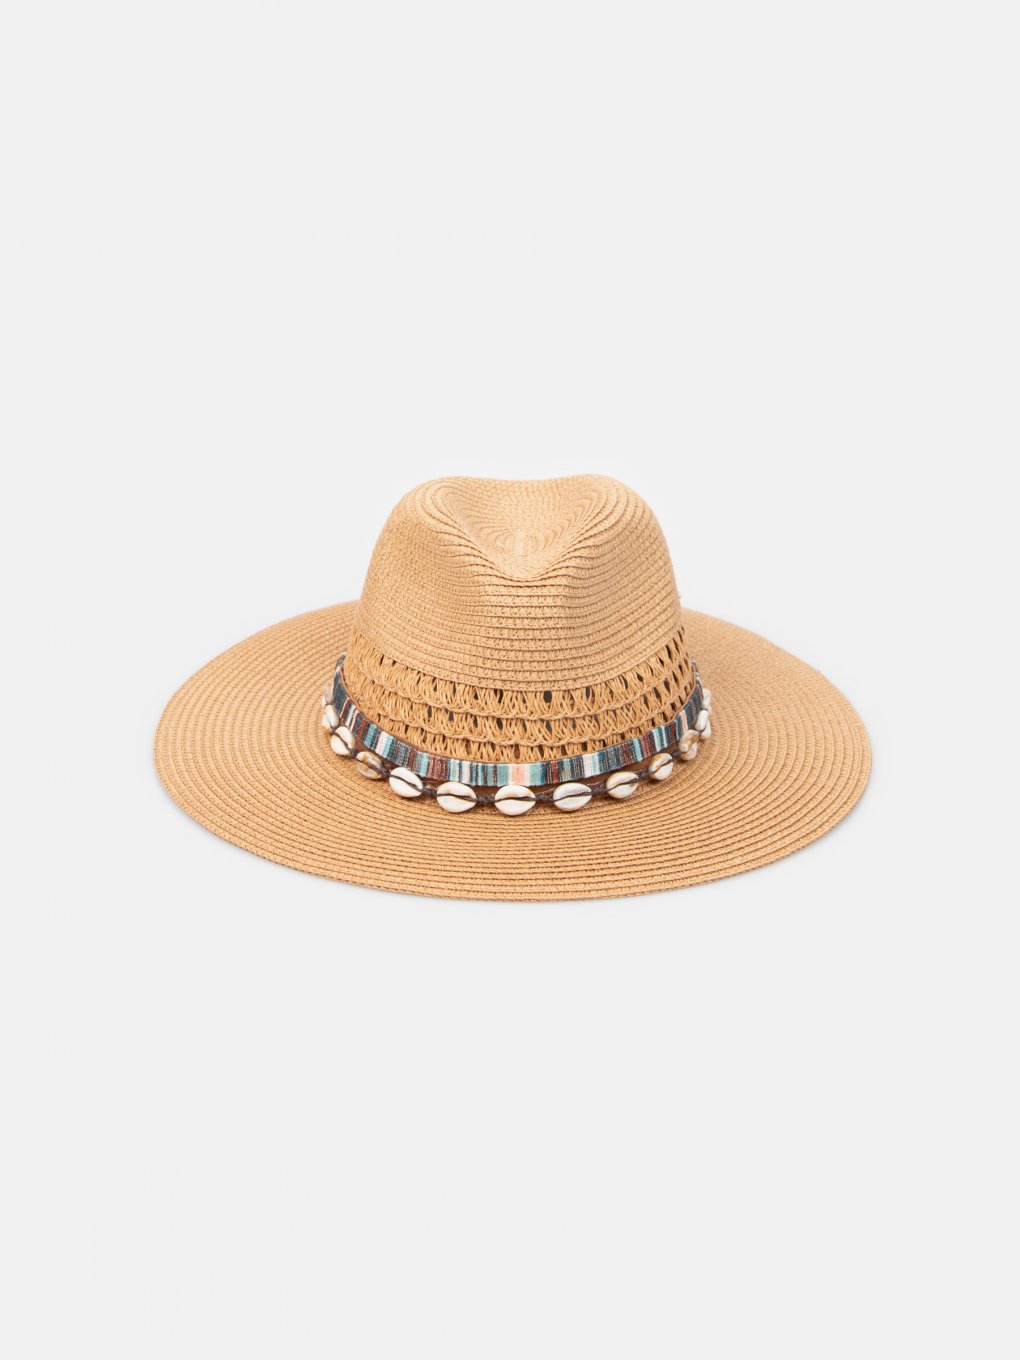 Letnia czapka Panama z muszelkami